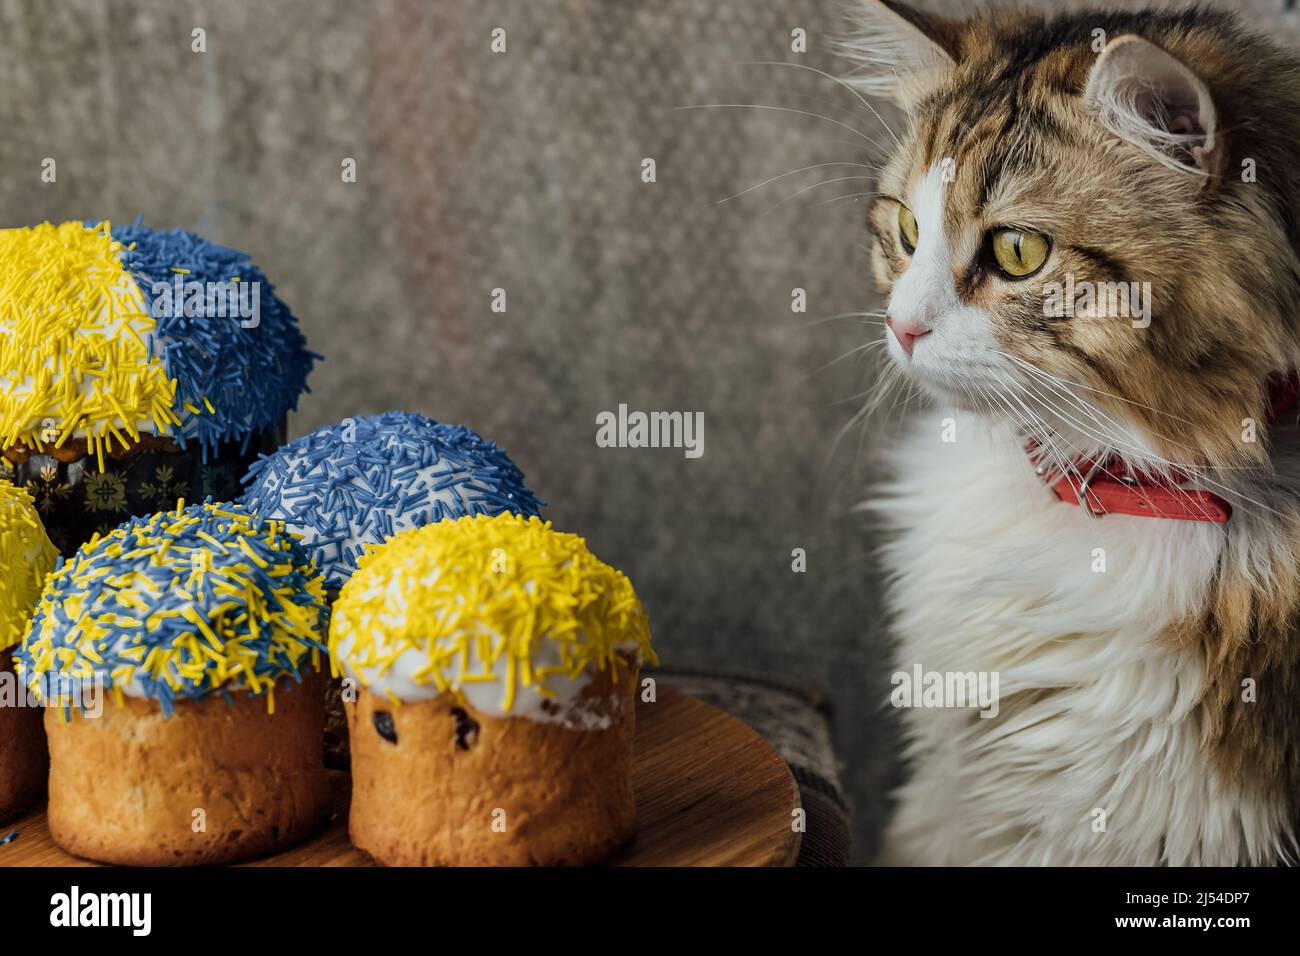 Un bel gatto dai capelli lunghi vicino a dolci di Pasqua decorato nei colori della bandiera Ucraina. Colore giallo blu Foto Stock